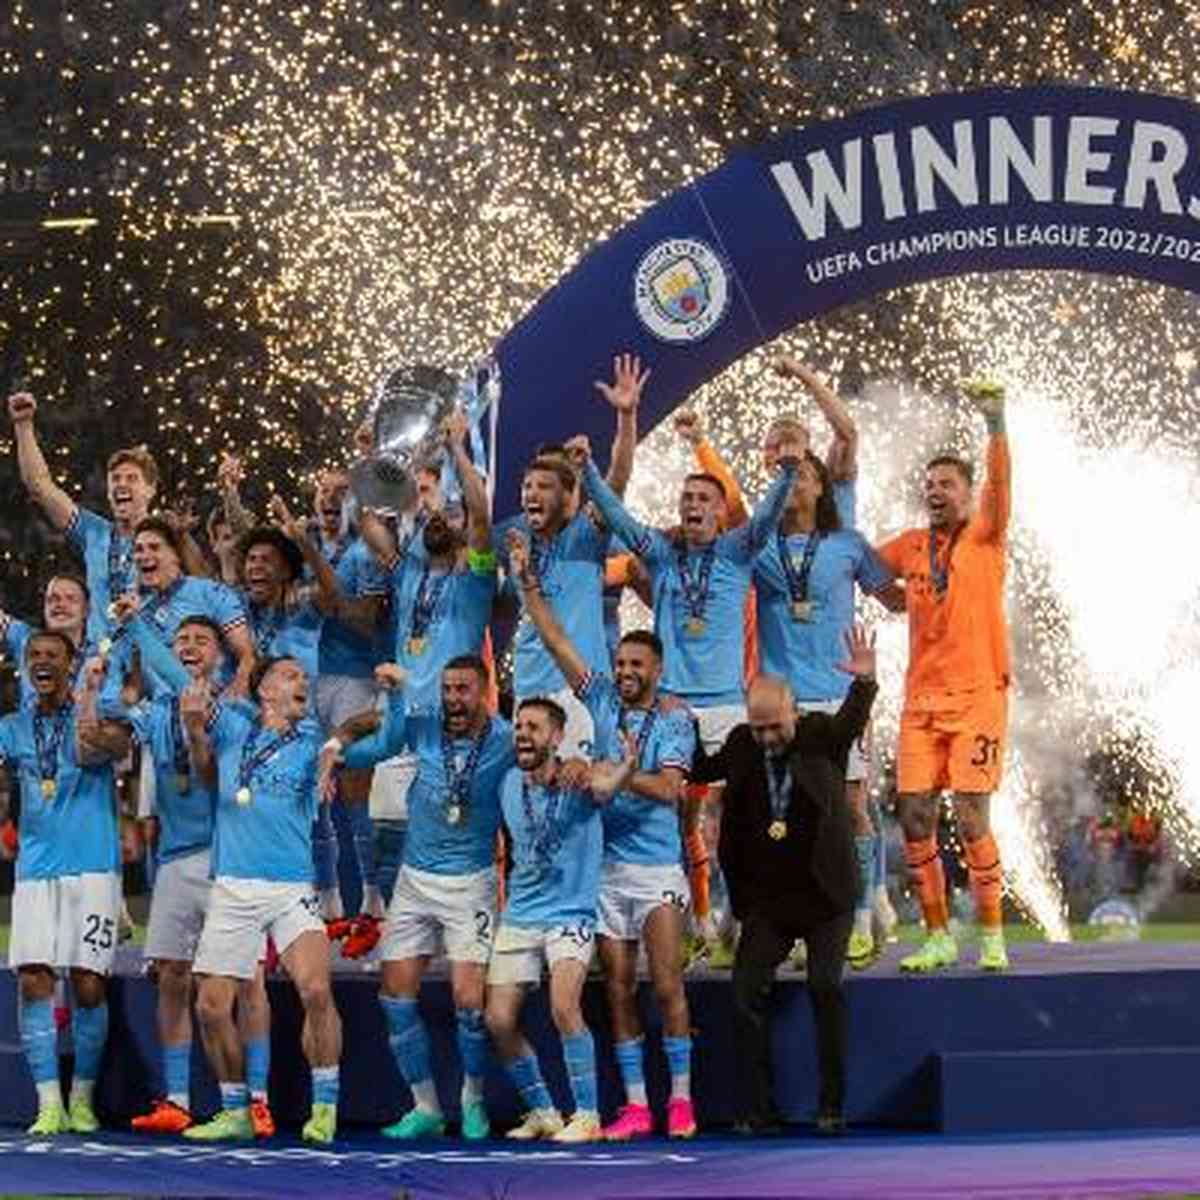 Qual o valor do prêmio que o City vai ganhar com o troféu da Champions?